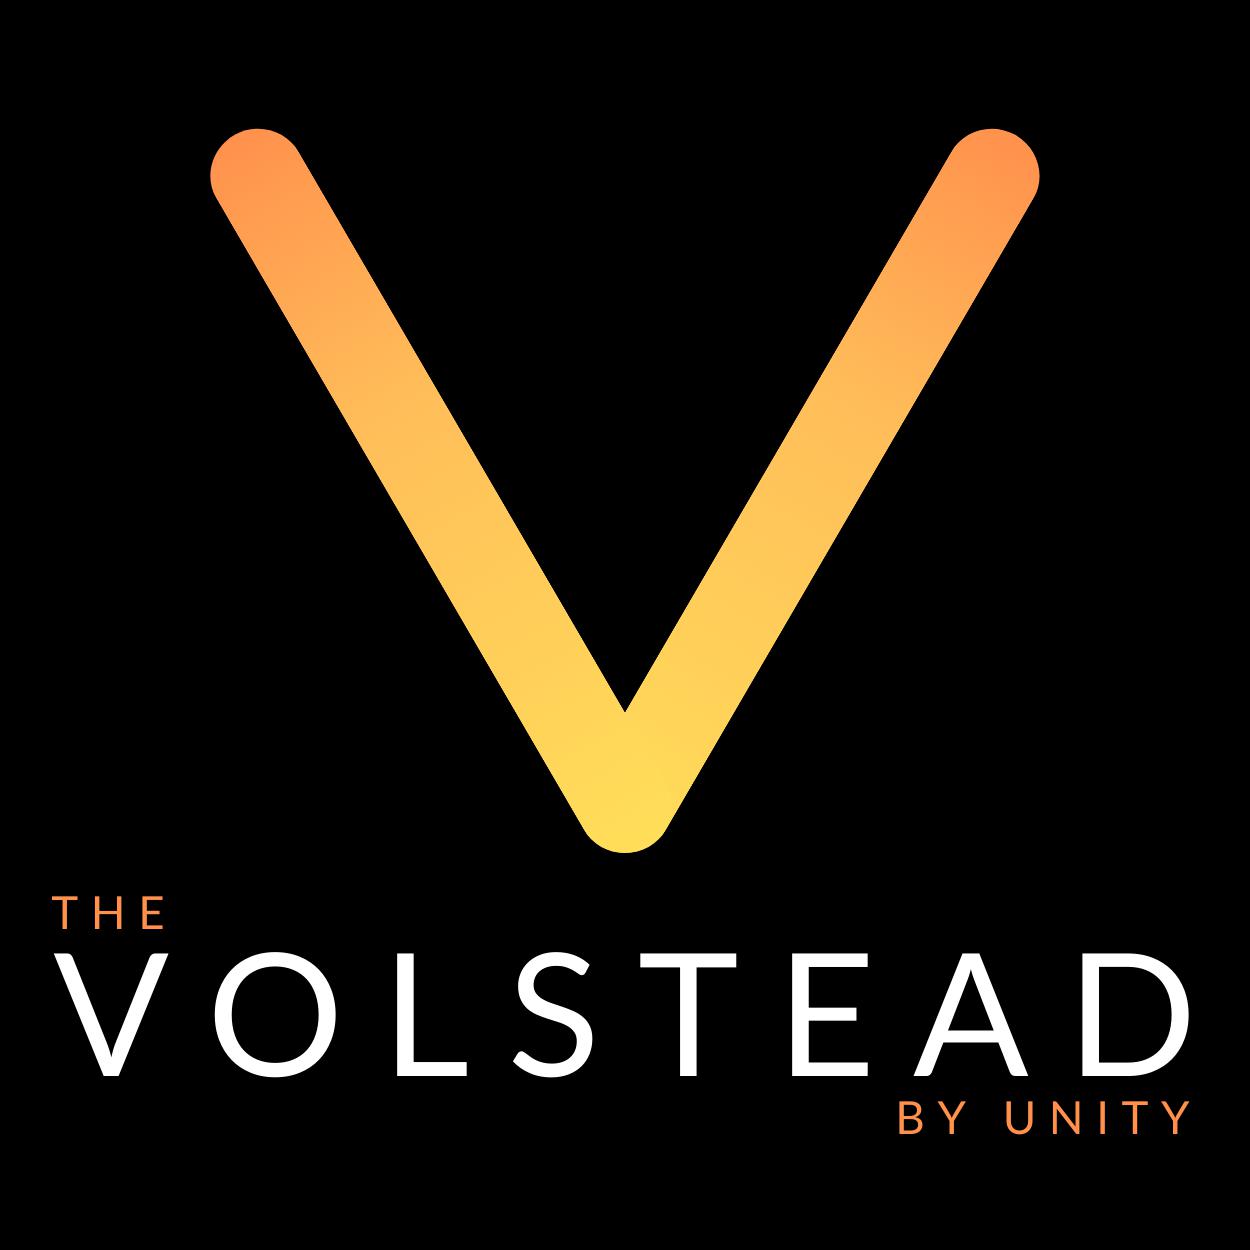 The Volstead by Unity Philadelphia